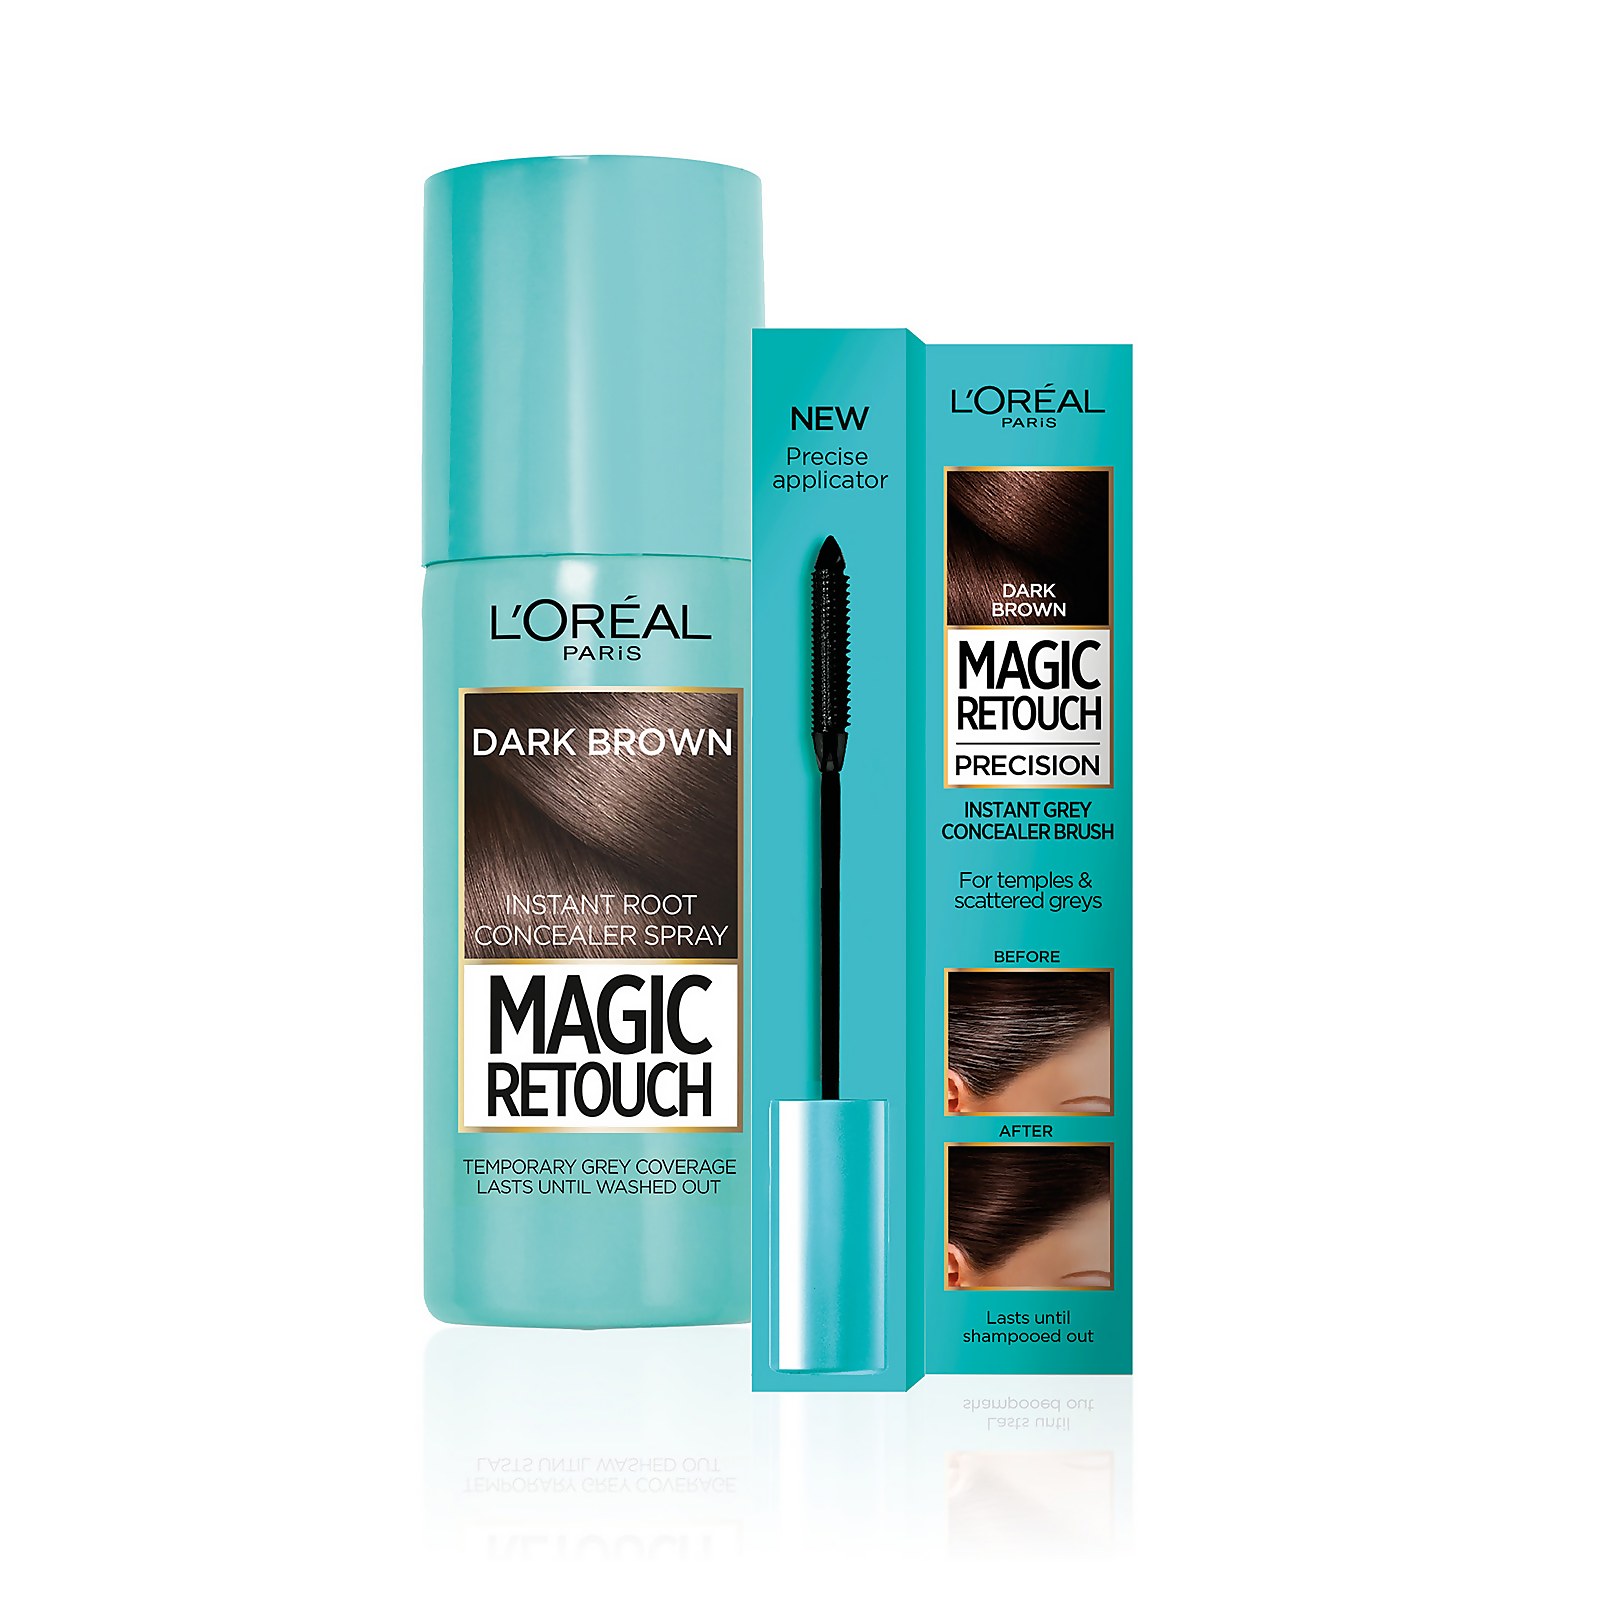 L'Oréal Paris Magic Retouch dark brown 75ml & Precision Instant Grey Concealer Brush Set